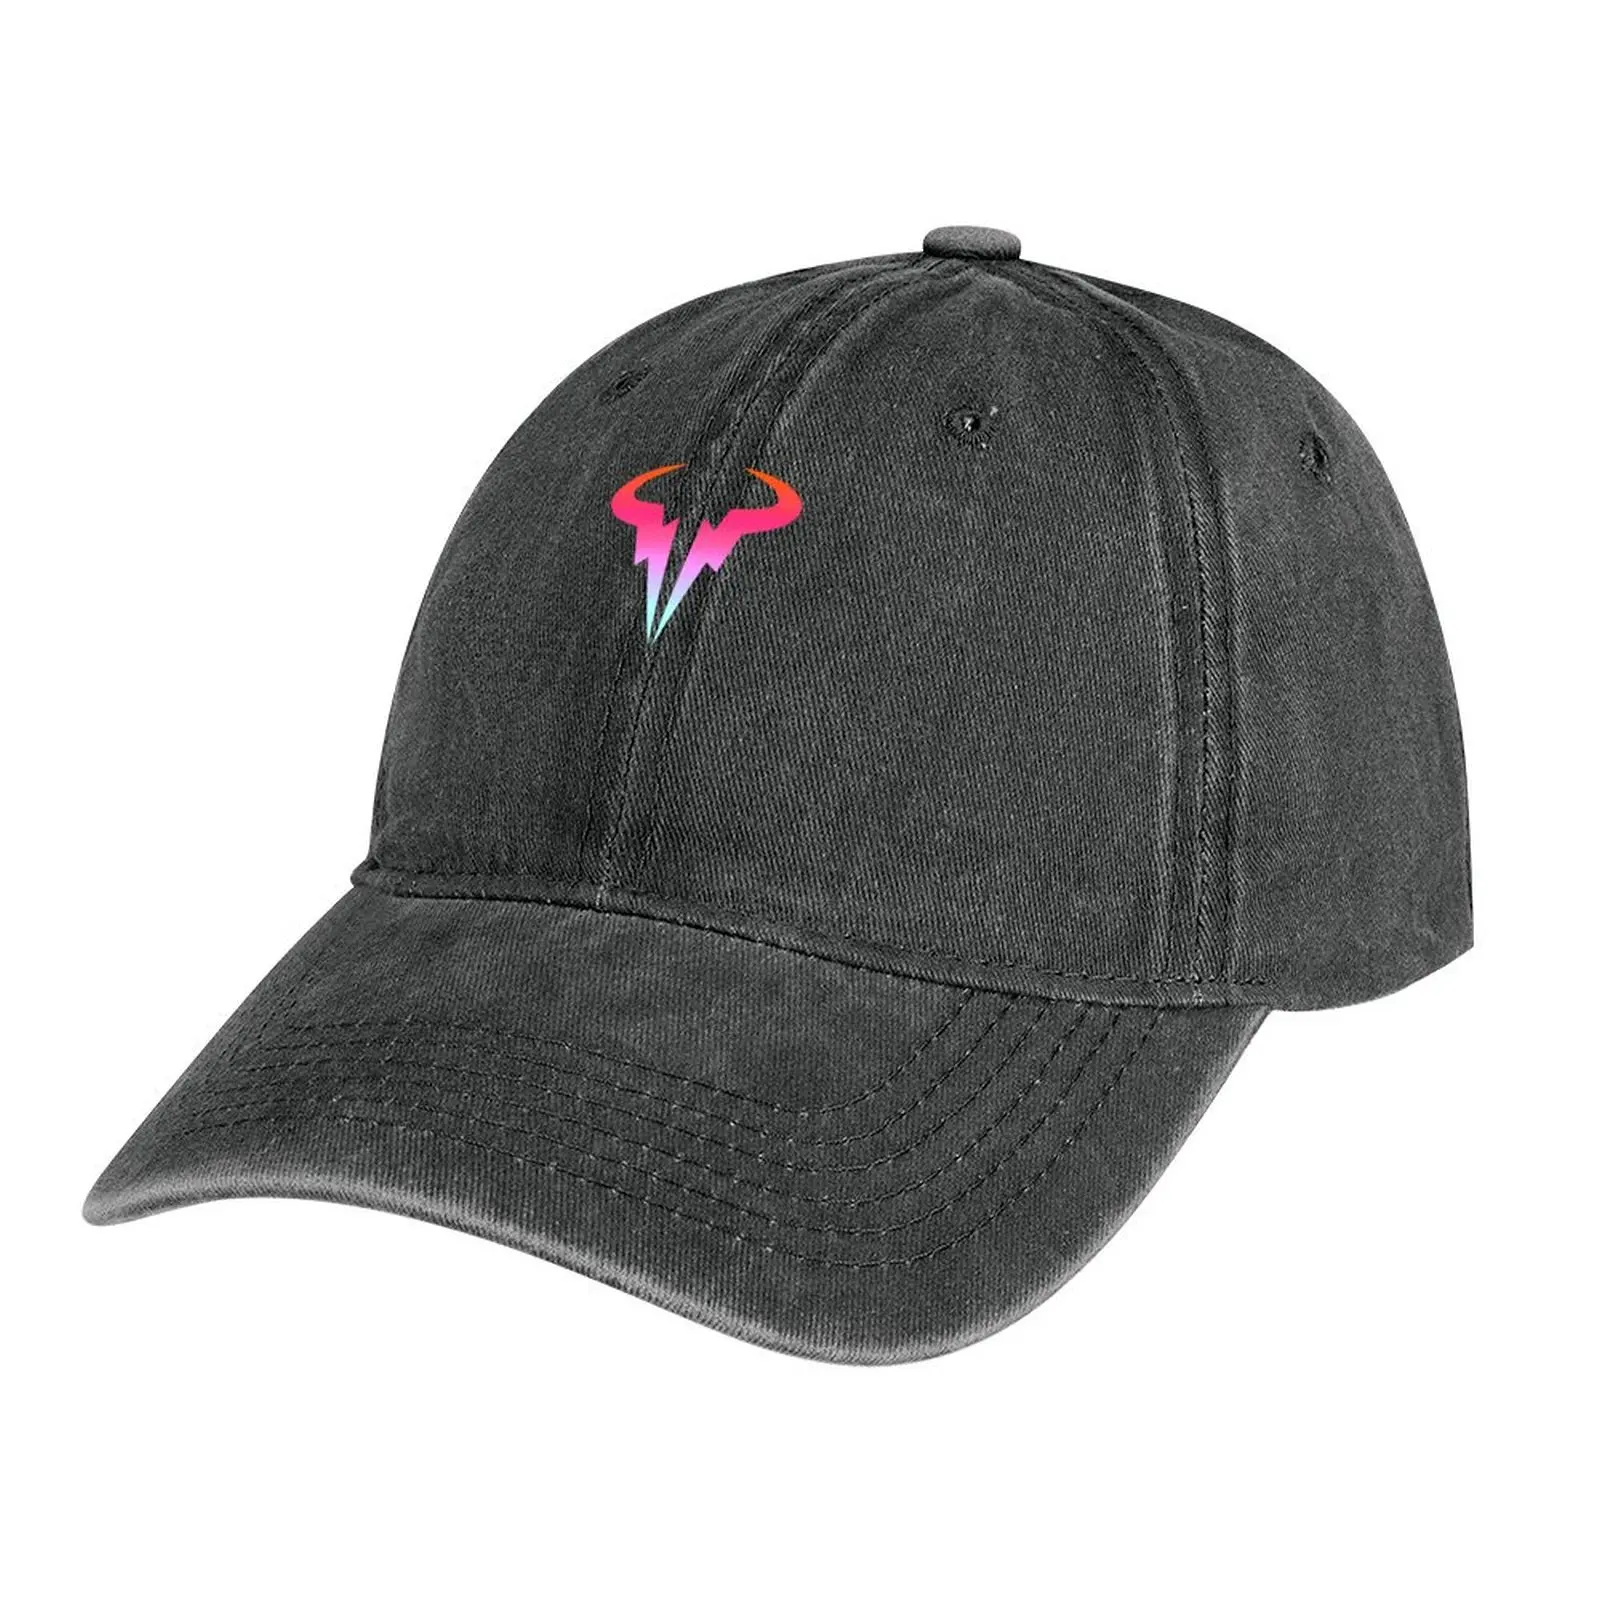 

Шляпа с логотипом rafael Надаль, ковбойская шляпа с логотипом Надаль, походная шляпа, фирменная мужская Кепка для мужчин и женщин